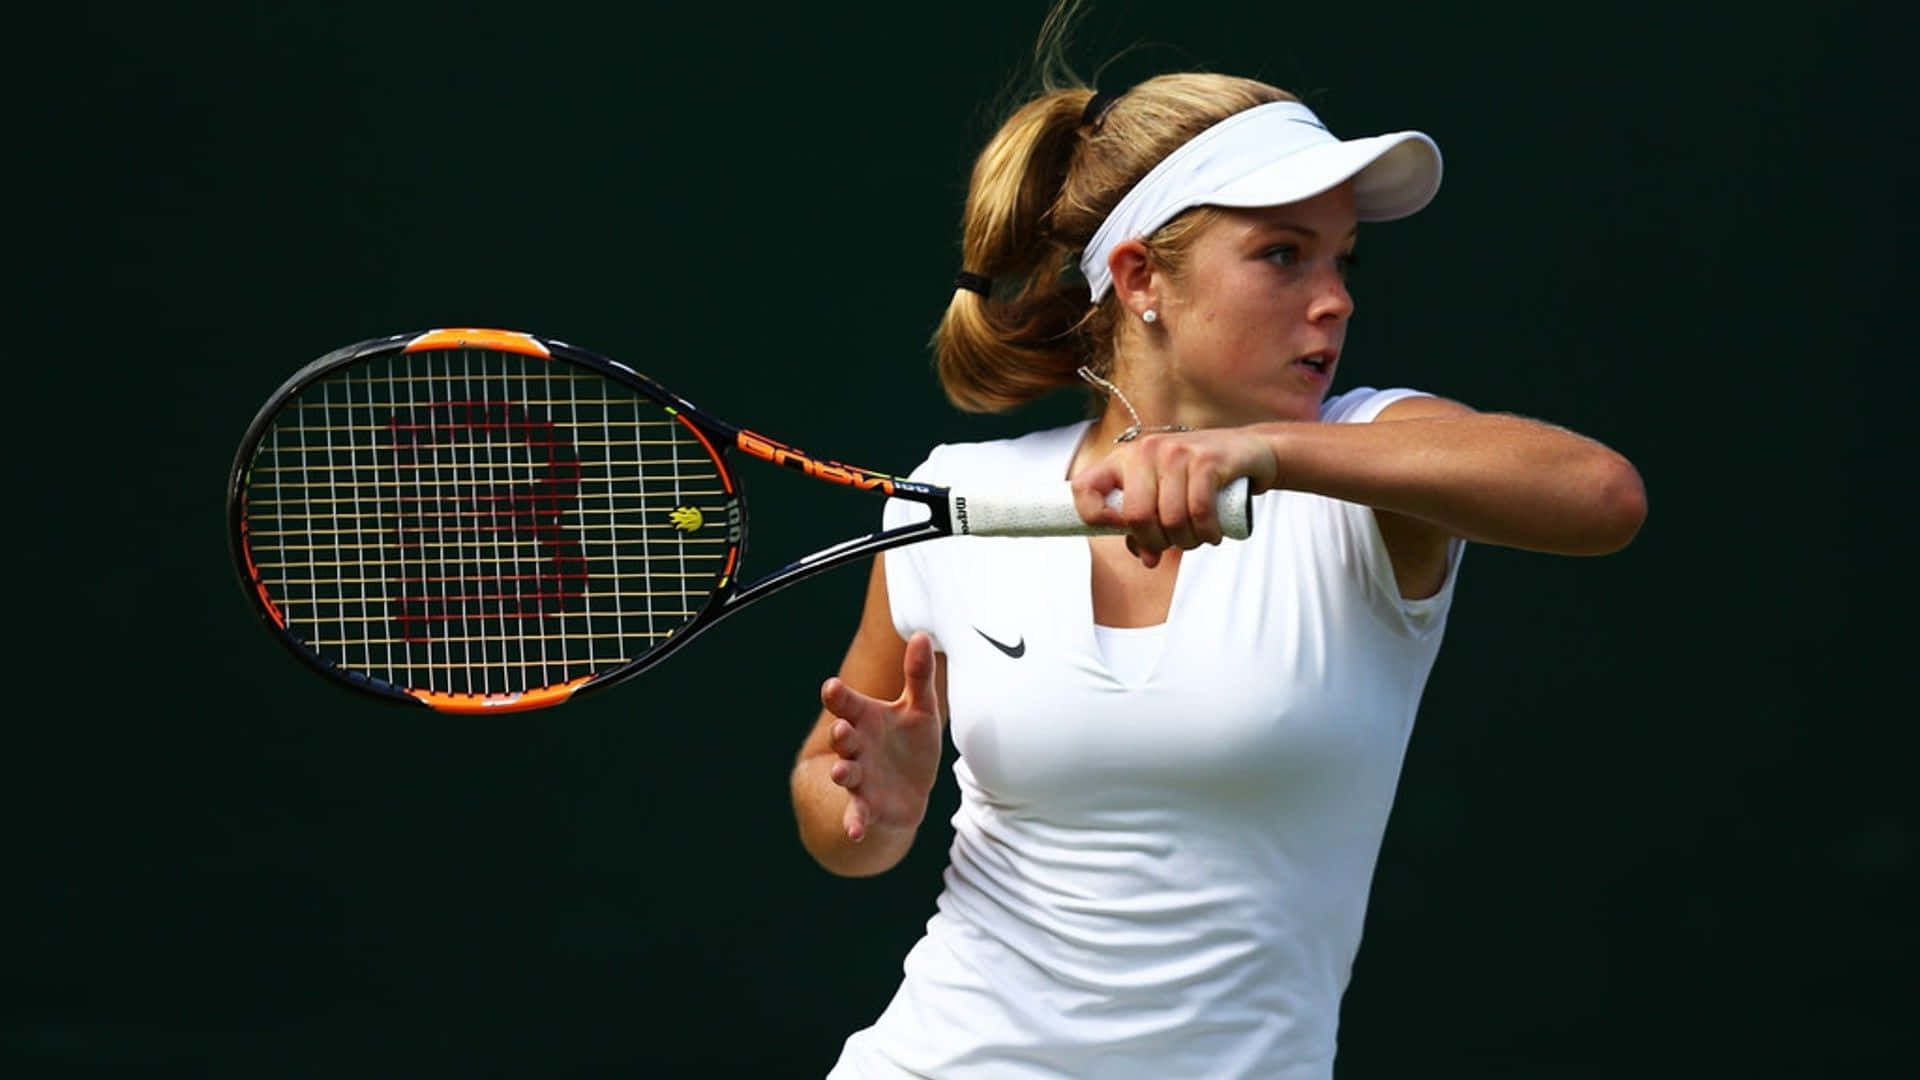 HD British Tennis Player Katie Swan Background